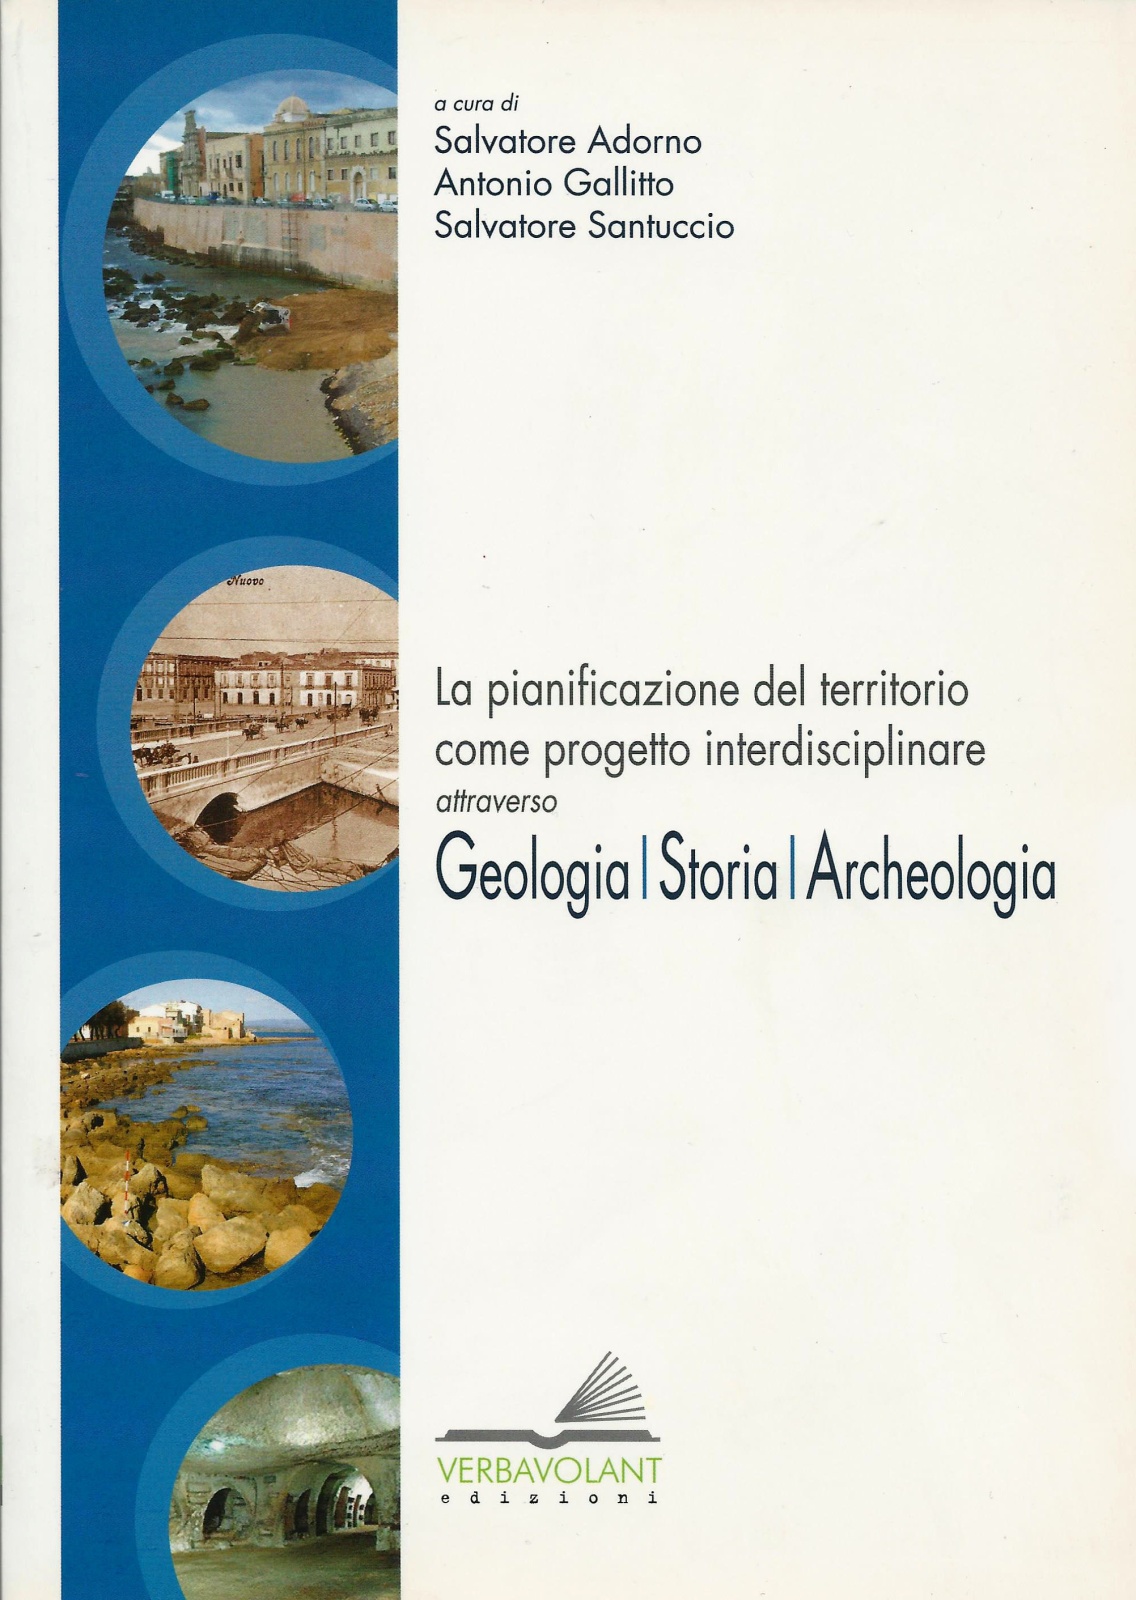 2010 - La pianificazione de territorio come progetto interdisciplinare attraverso : Geologia/Storia/Archeologia